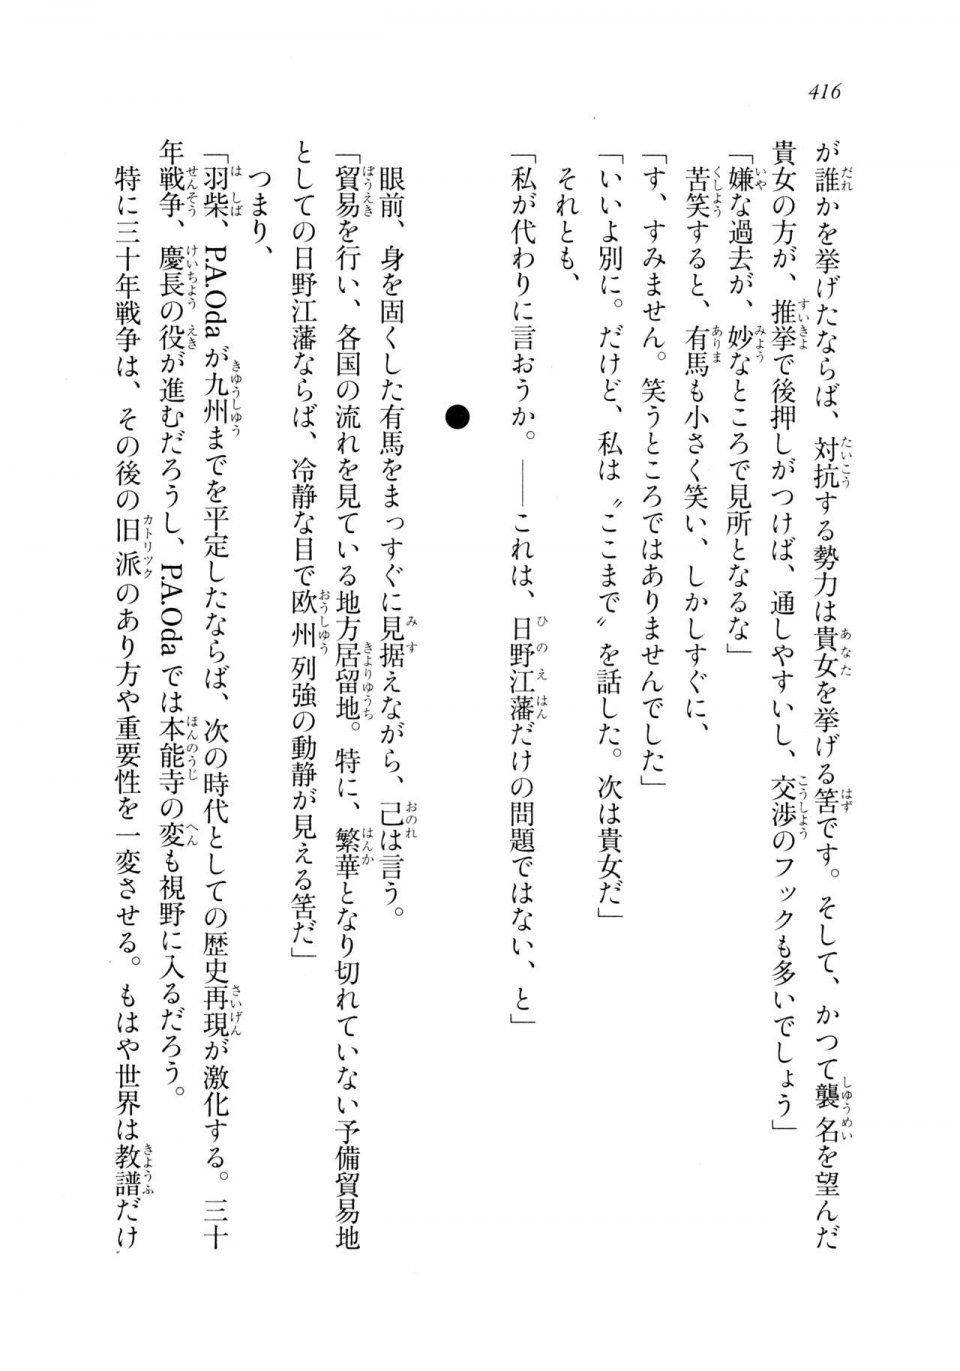 Kyoukai Senjou no Horizon LN Sidestory Vol 2 - Photo #414